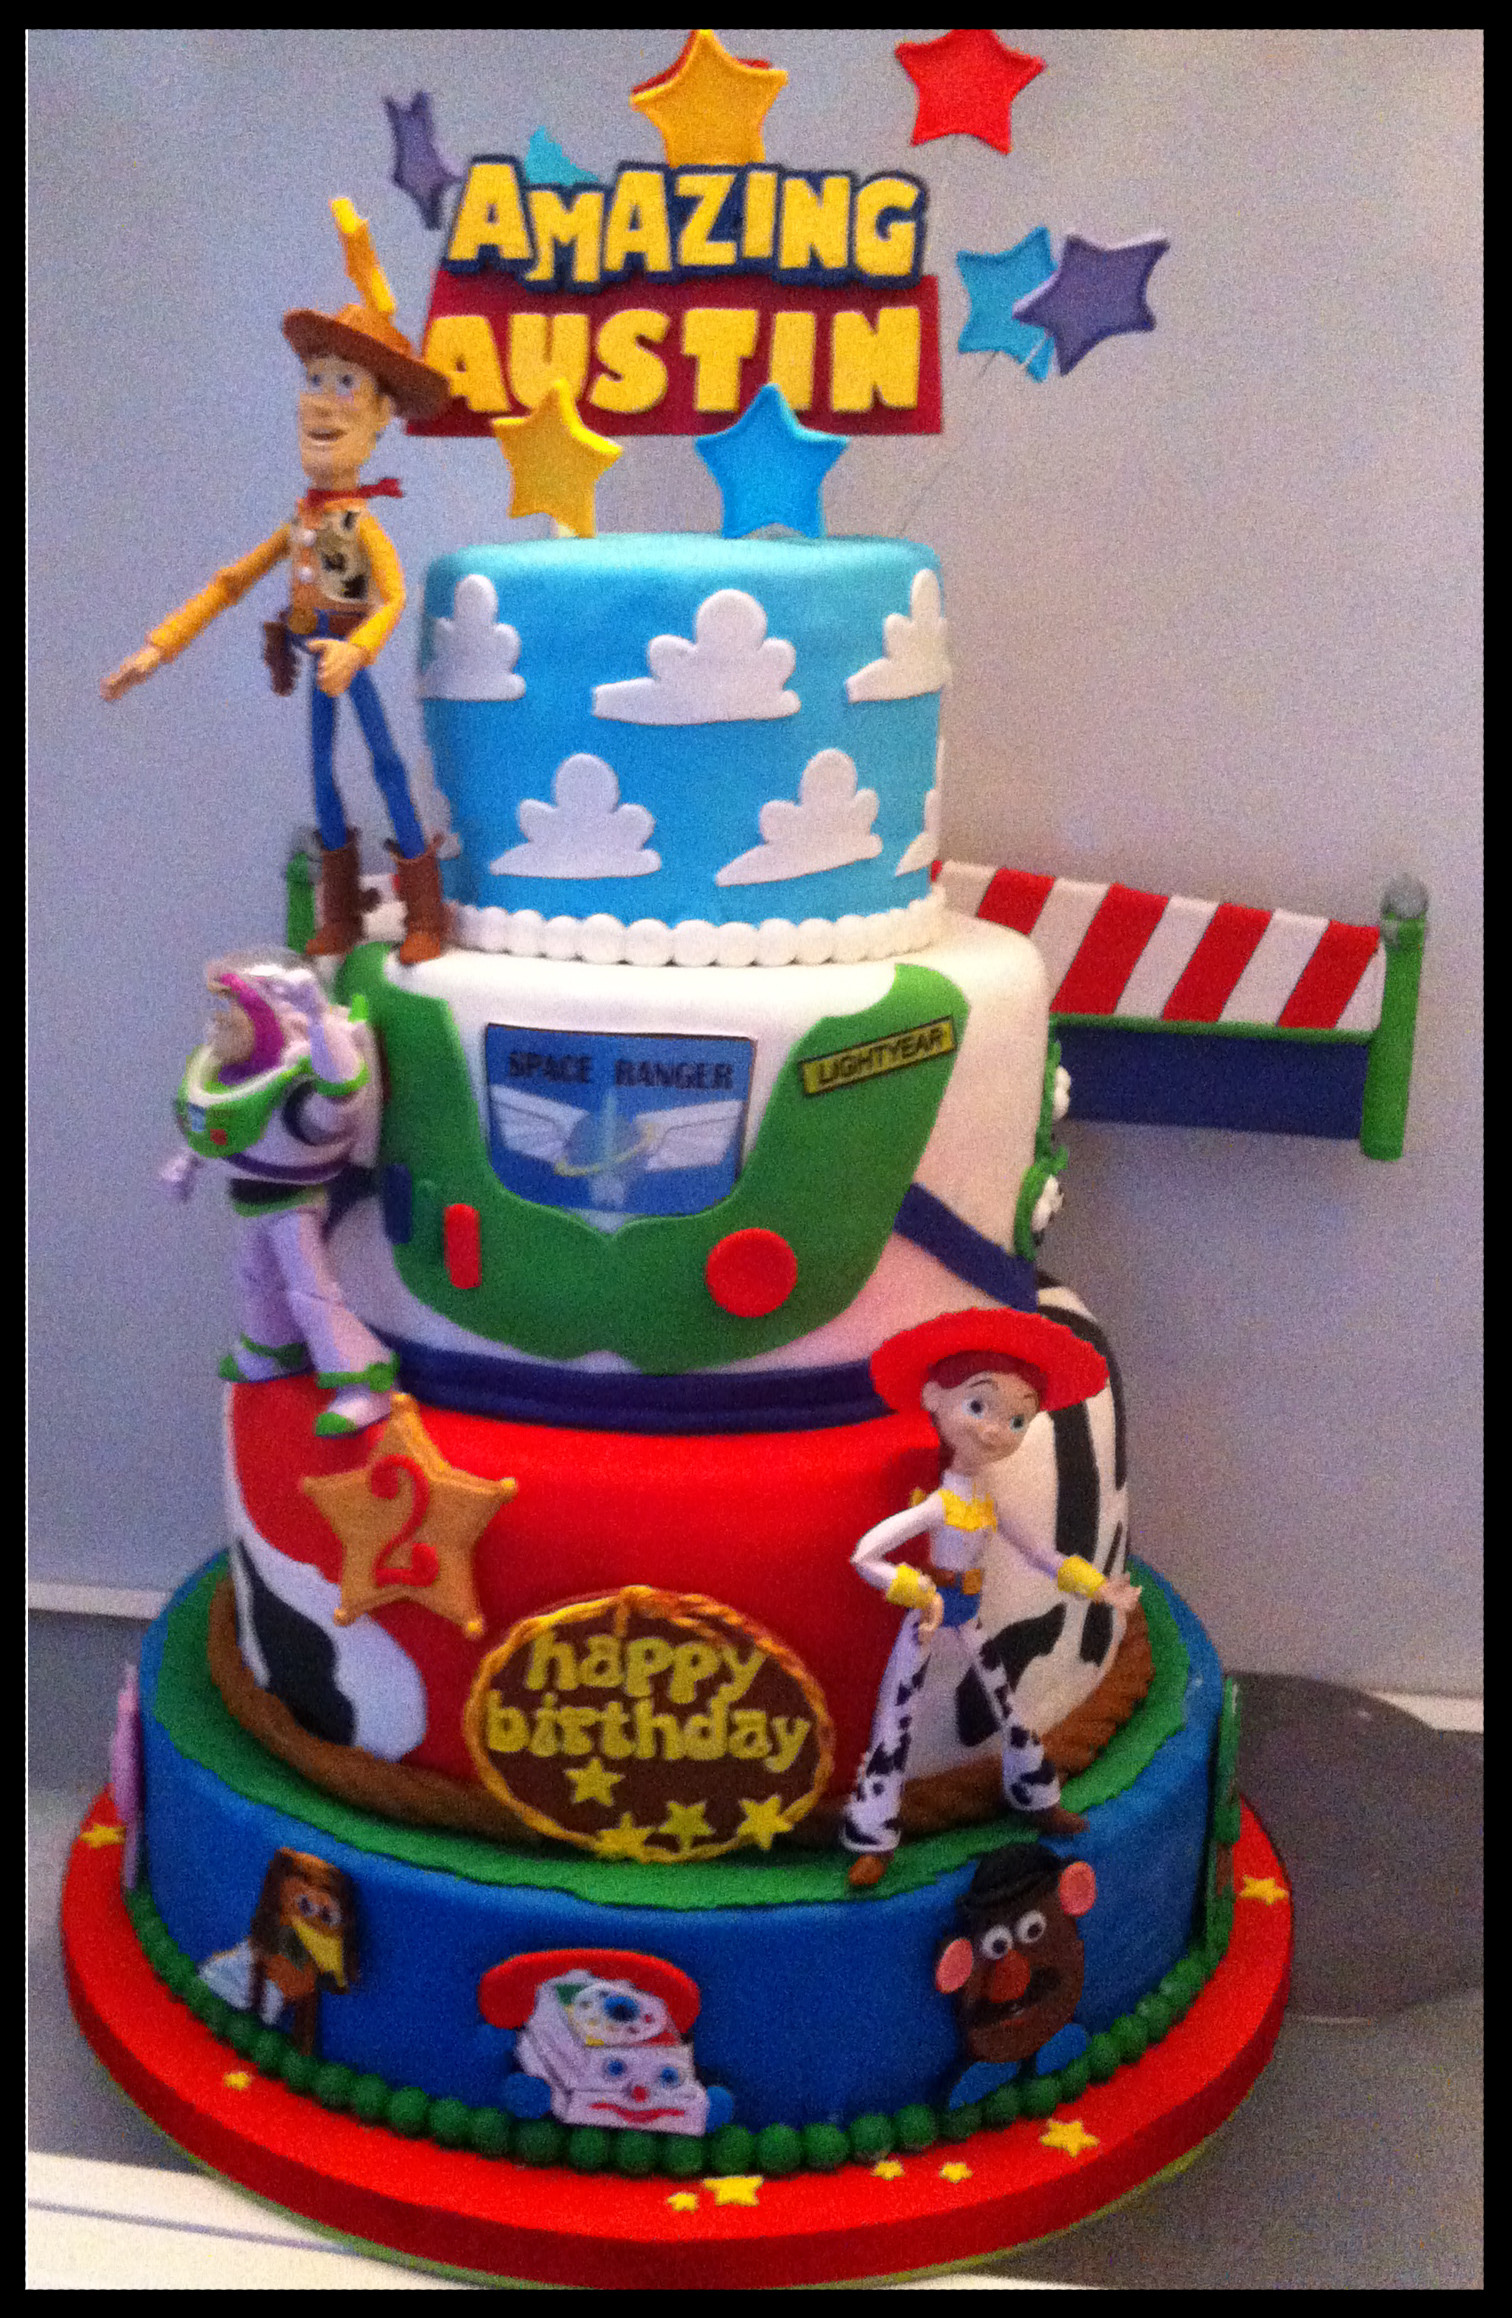 Toy Story Birthday Cake
 Amazing Austin’s Toy Story Birthday Cake – Mad s Cakes